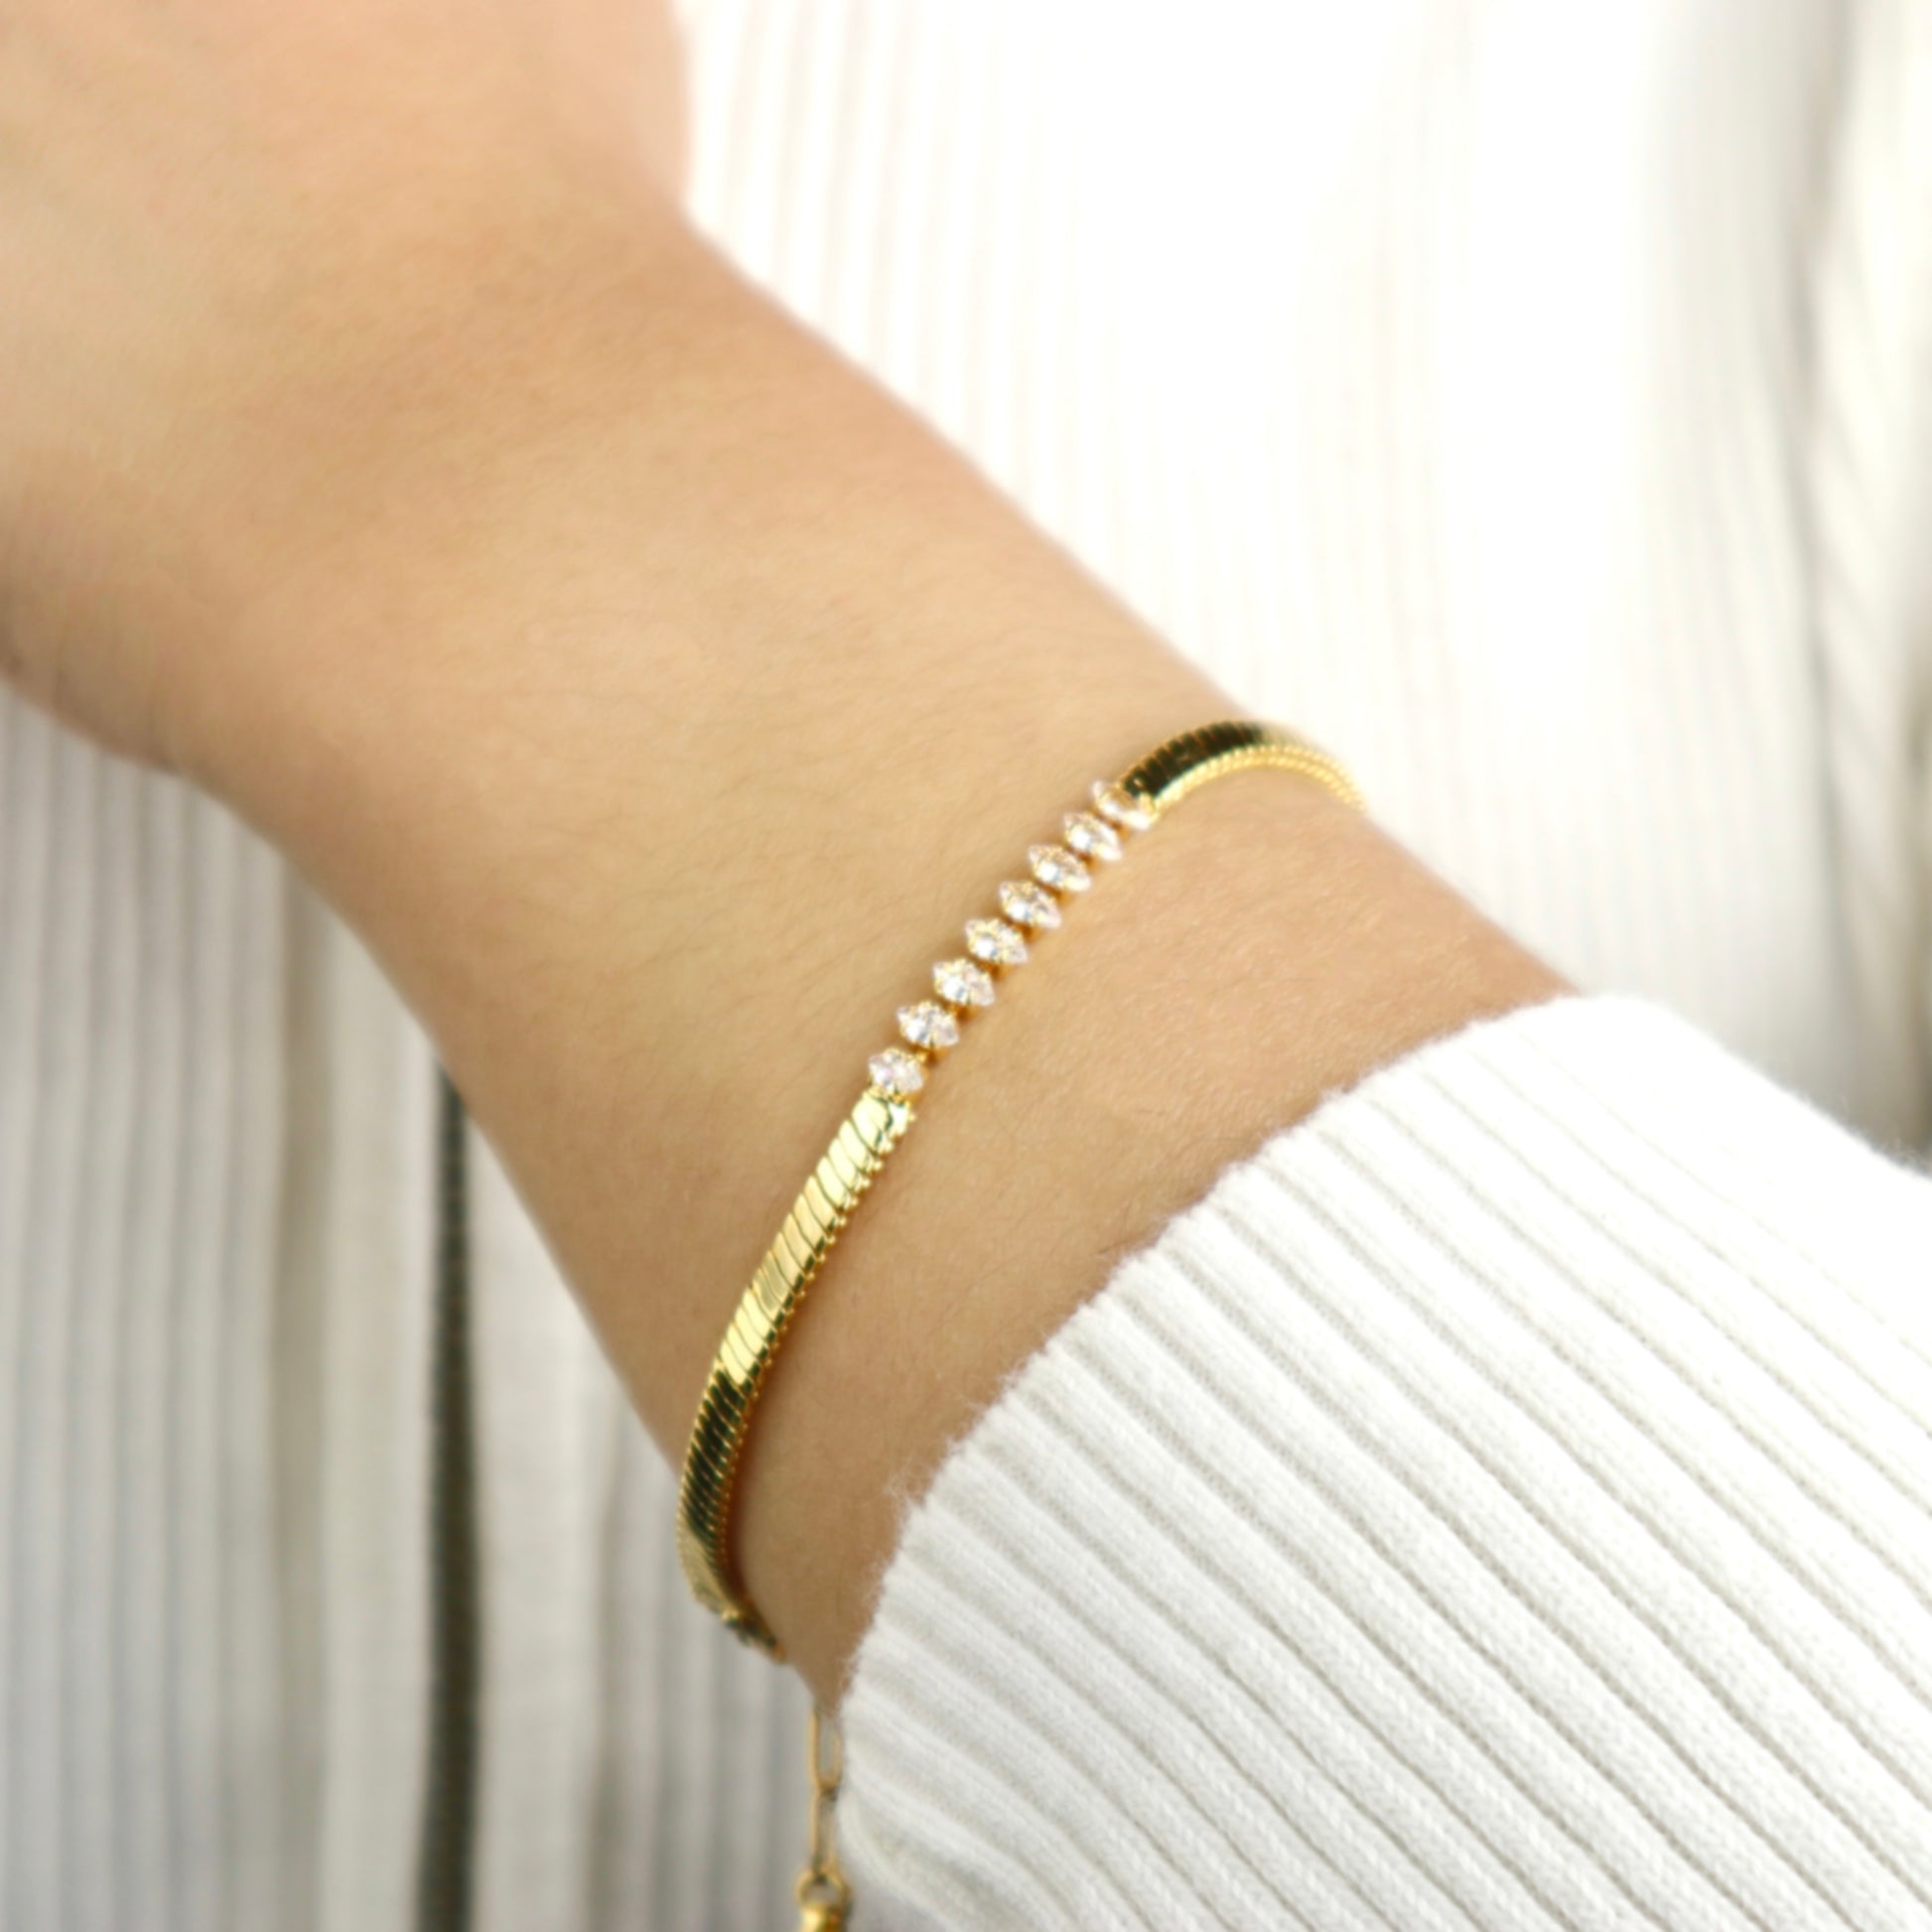 Women's gold bracelets